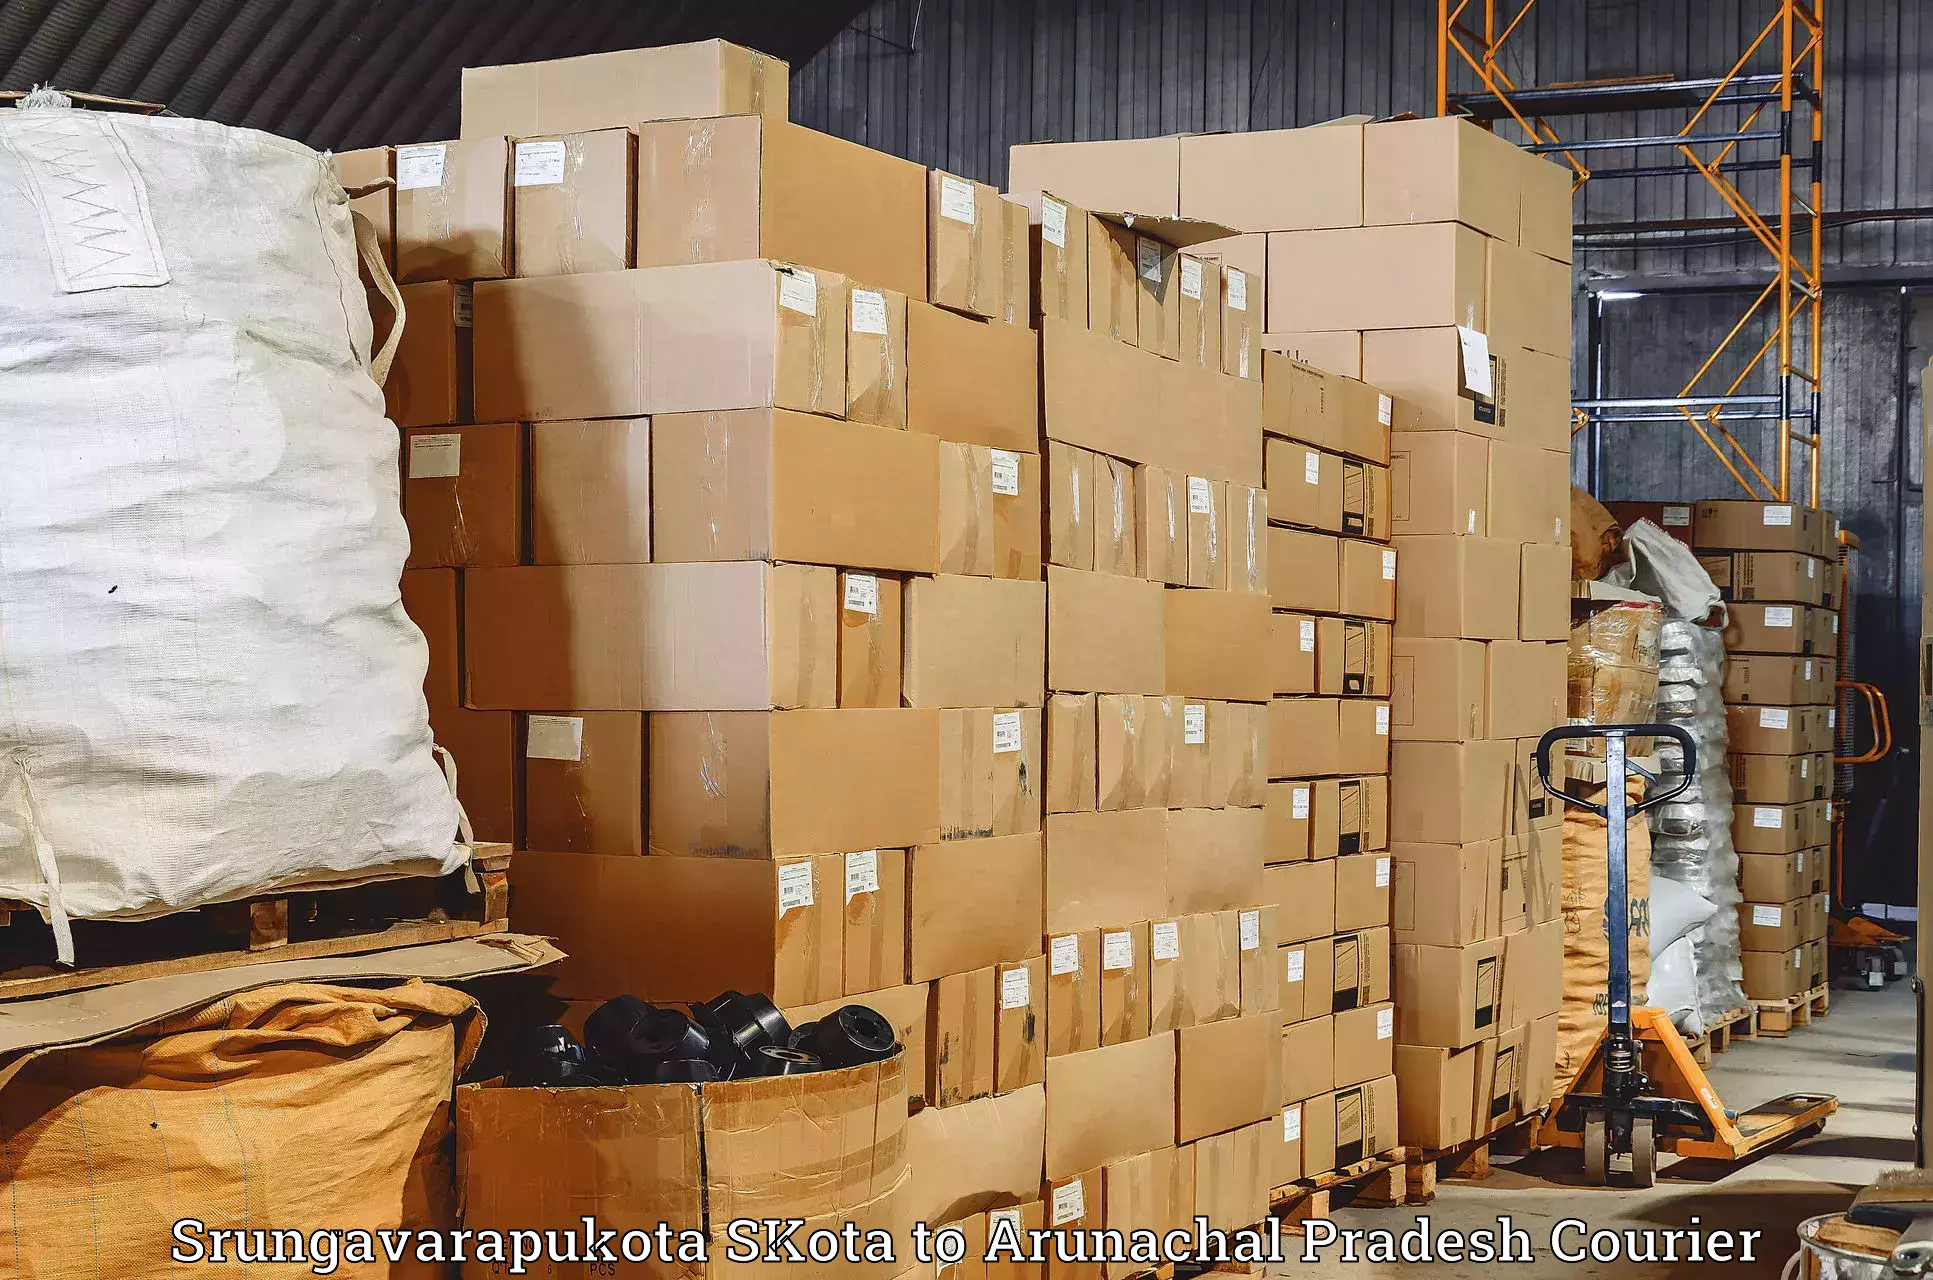 High-speed parcel service Srungavarapukota SKota to Aalo